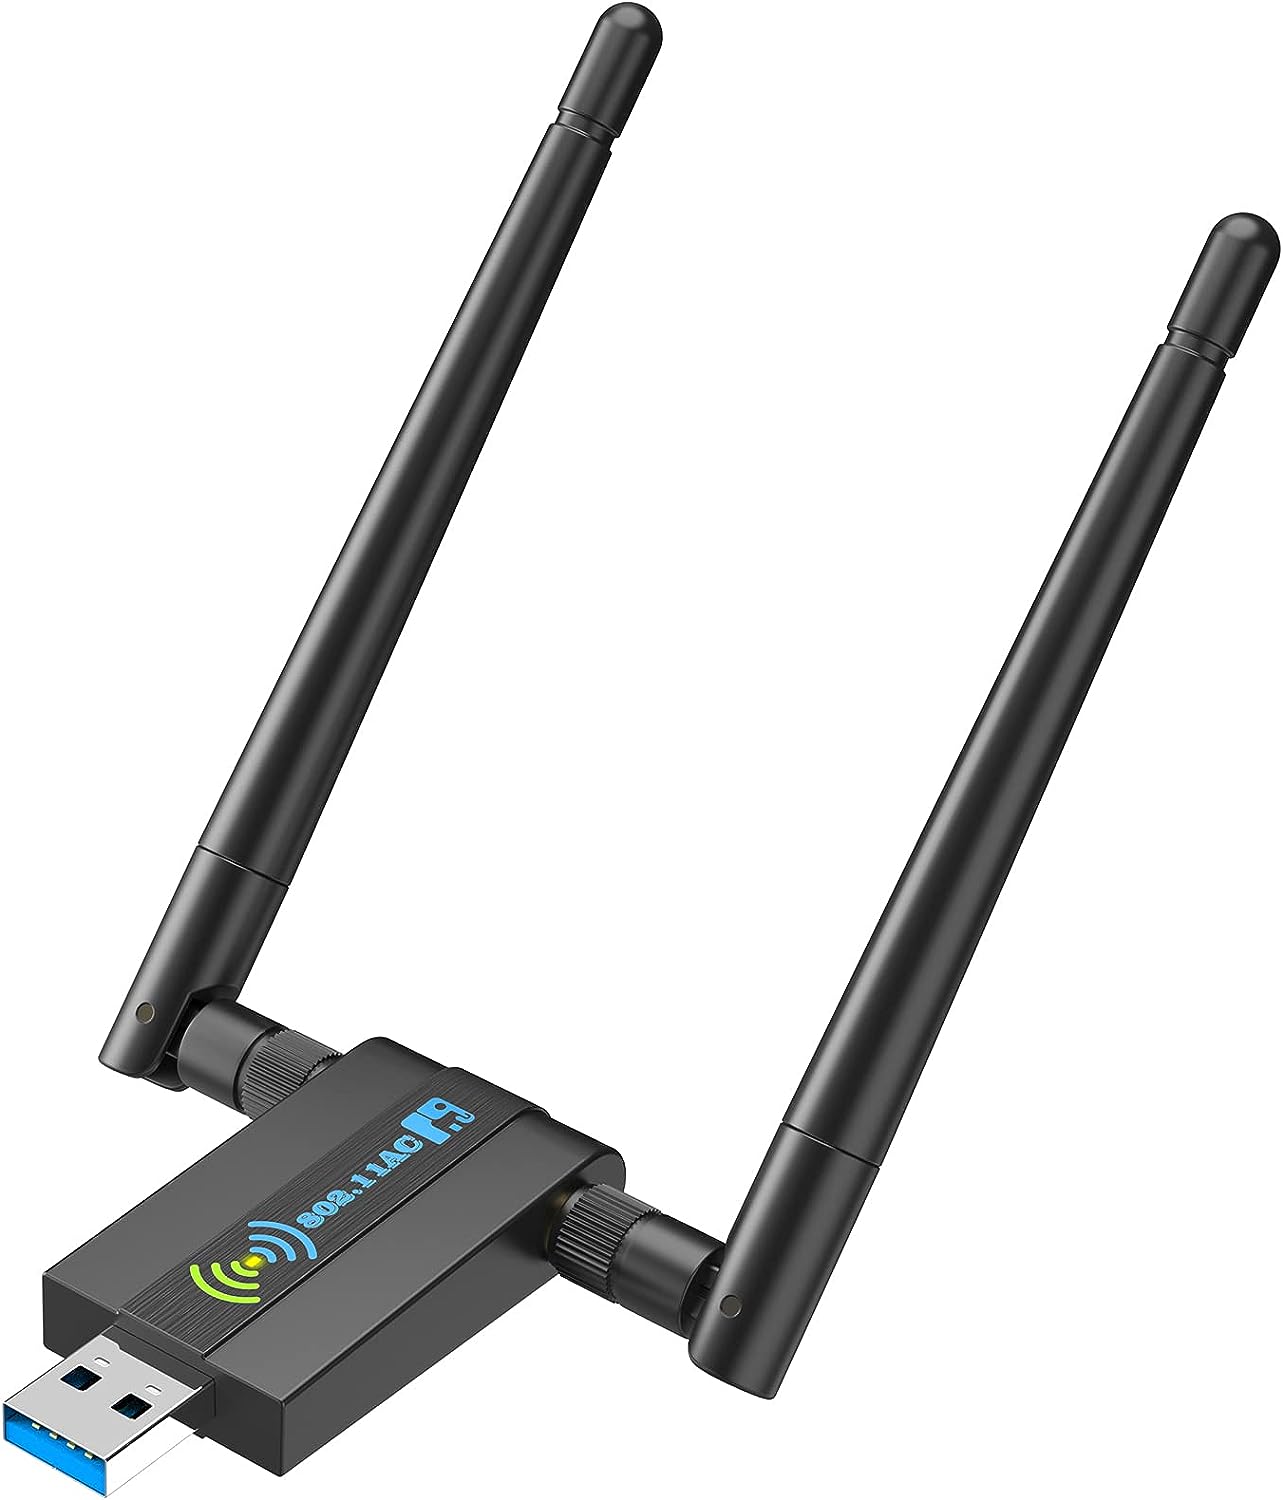 Wireless USB WiFi Adapter for PC: CXFTEOXK 1300Mbps WiFi USB